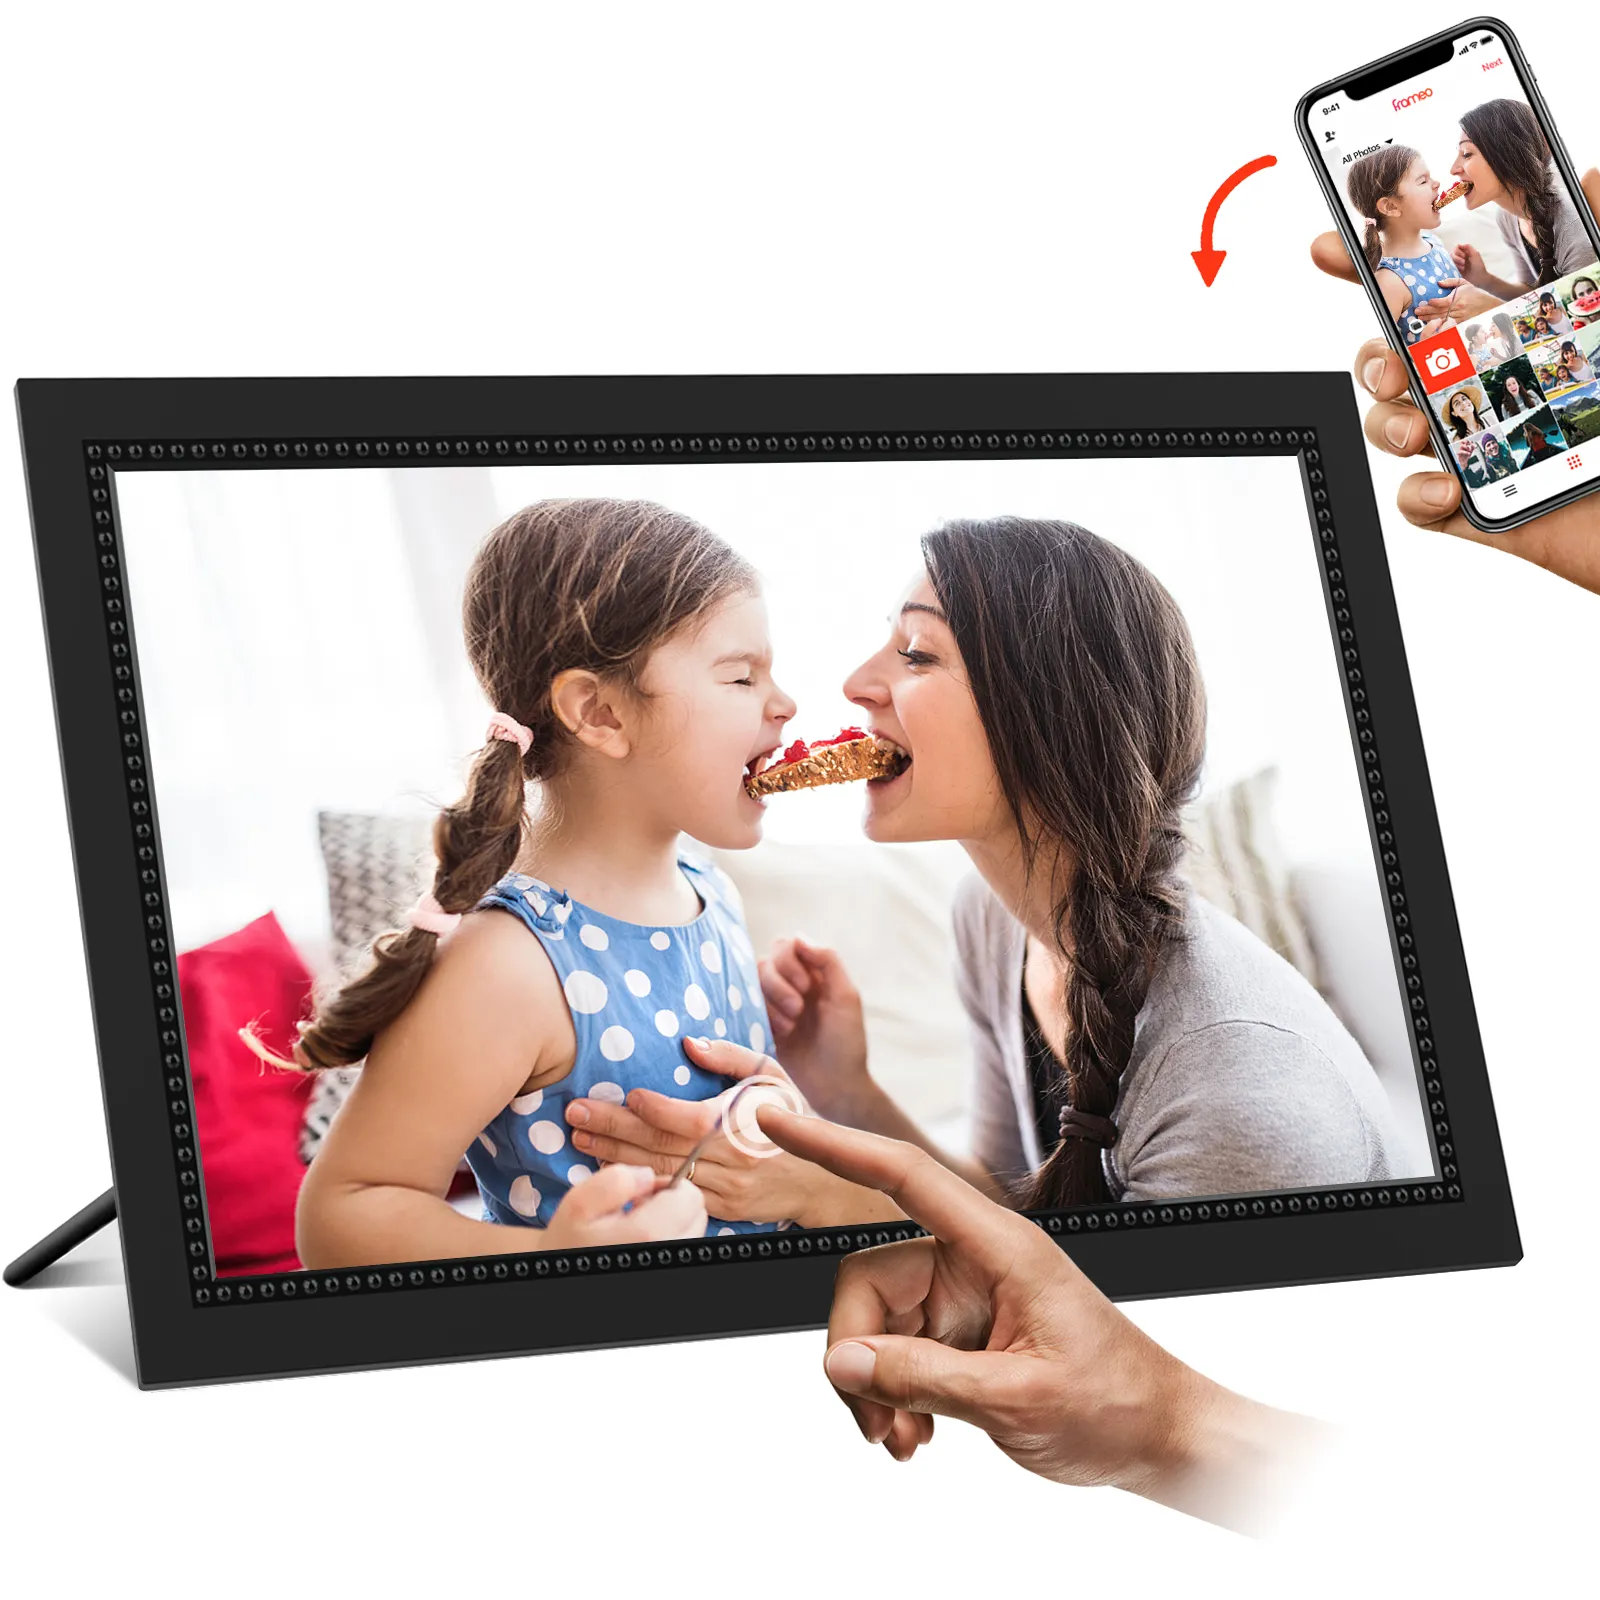 Frameoアプリ15.6インチフレームタッチスクリーン付き16年からの写真ビデオを共有Oem工場Wifiデジタル写真額縁